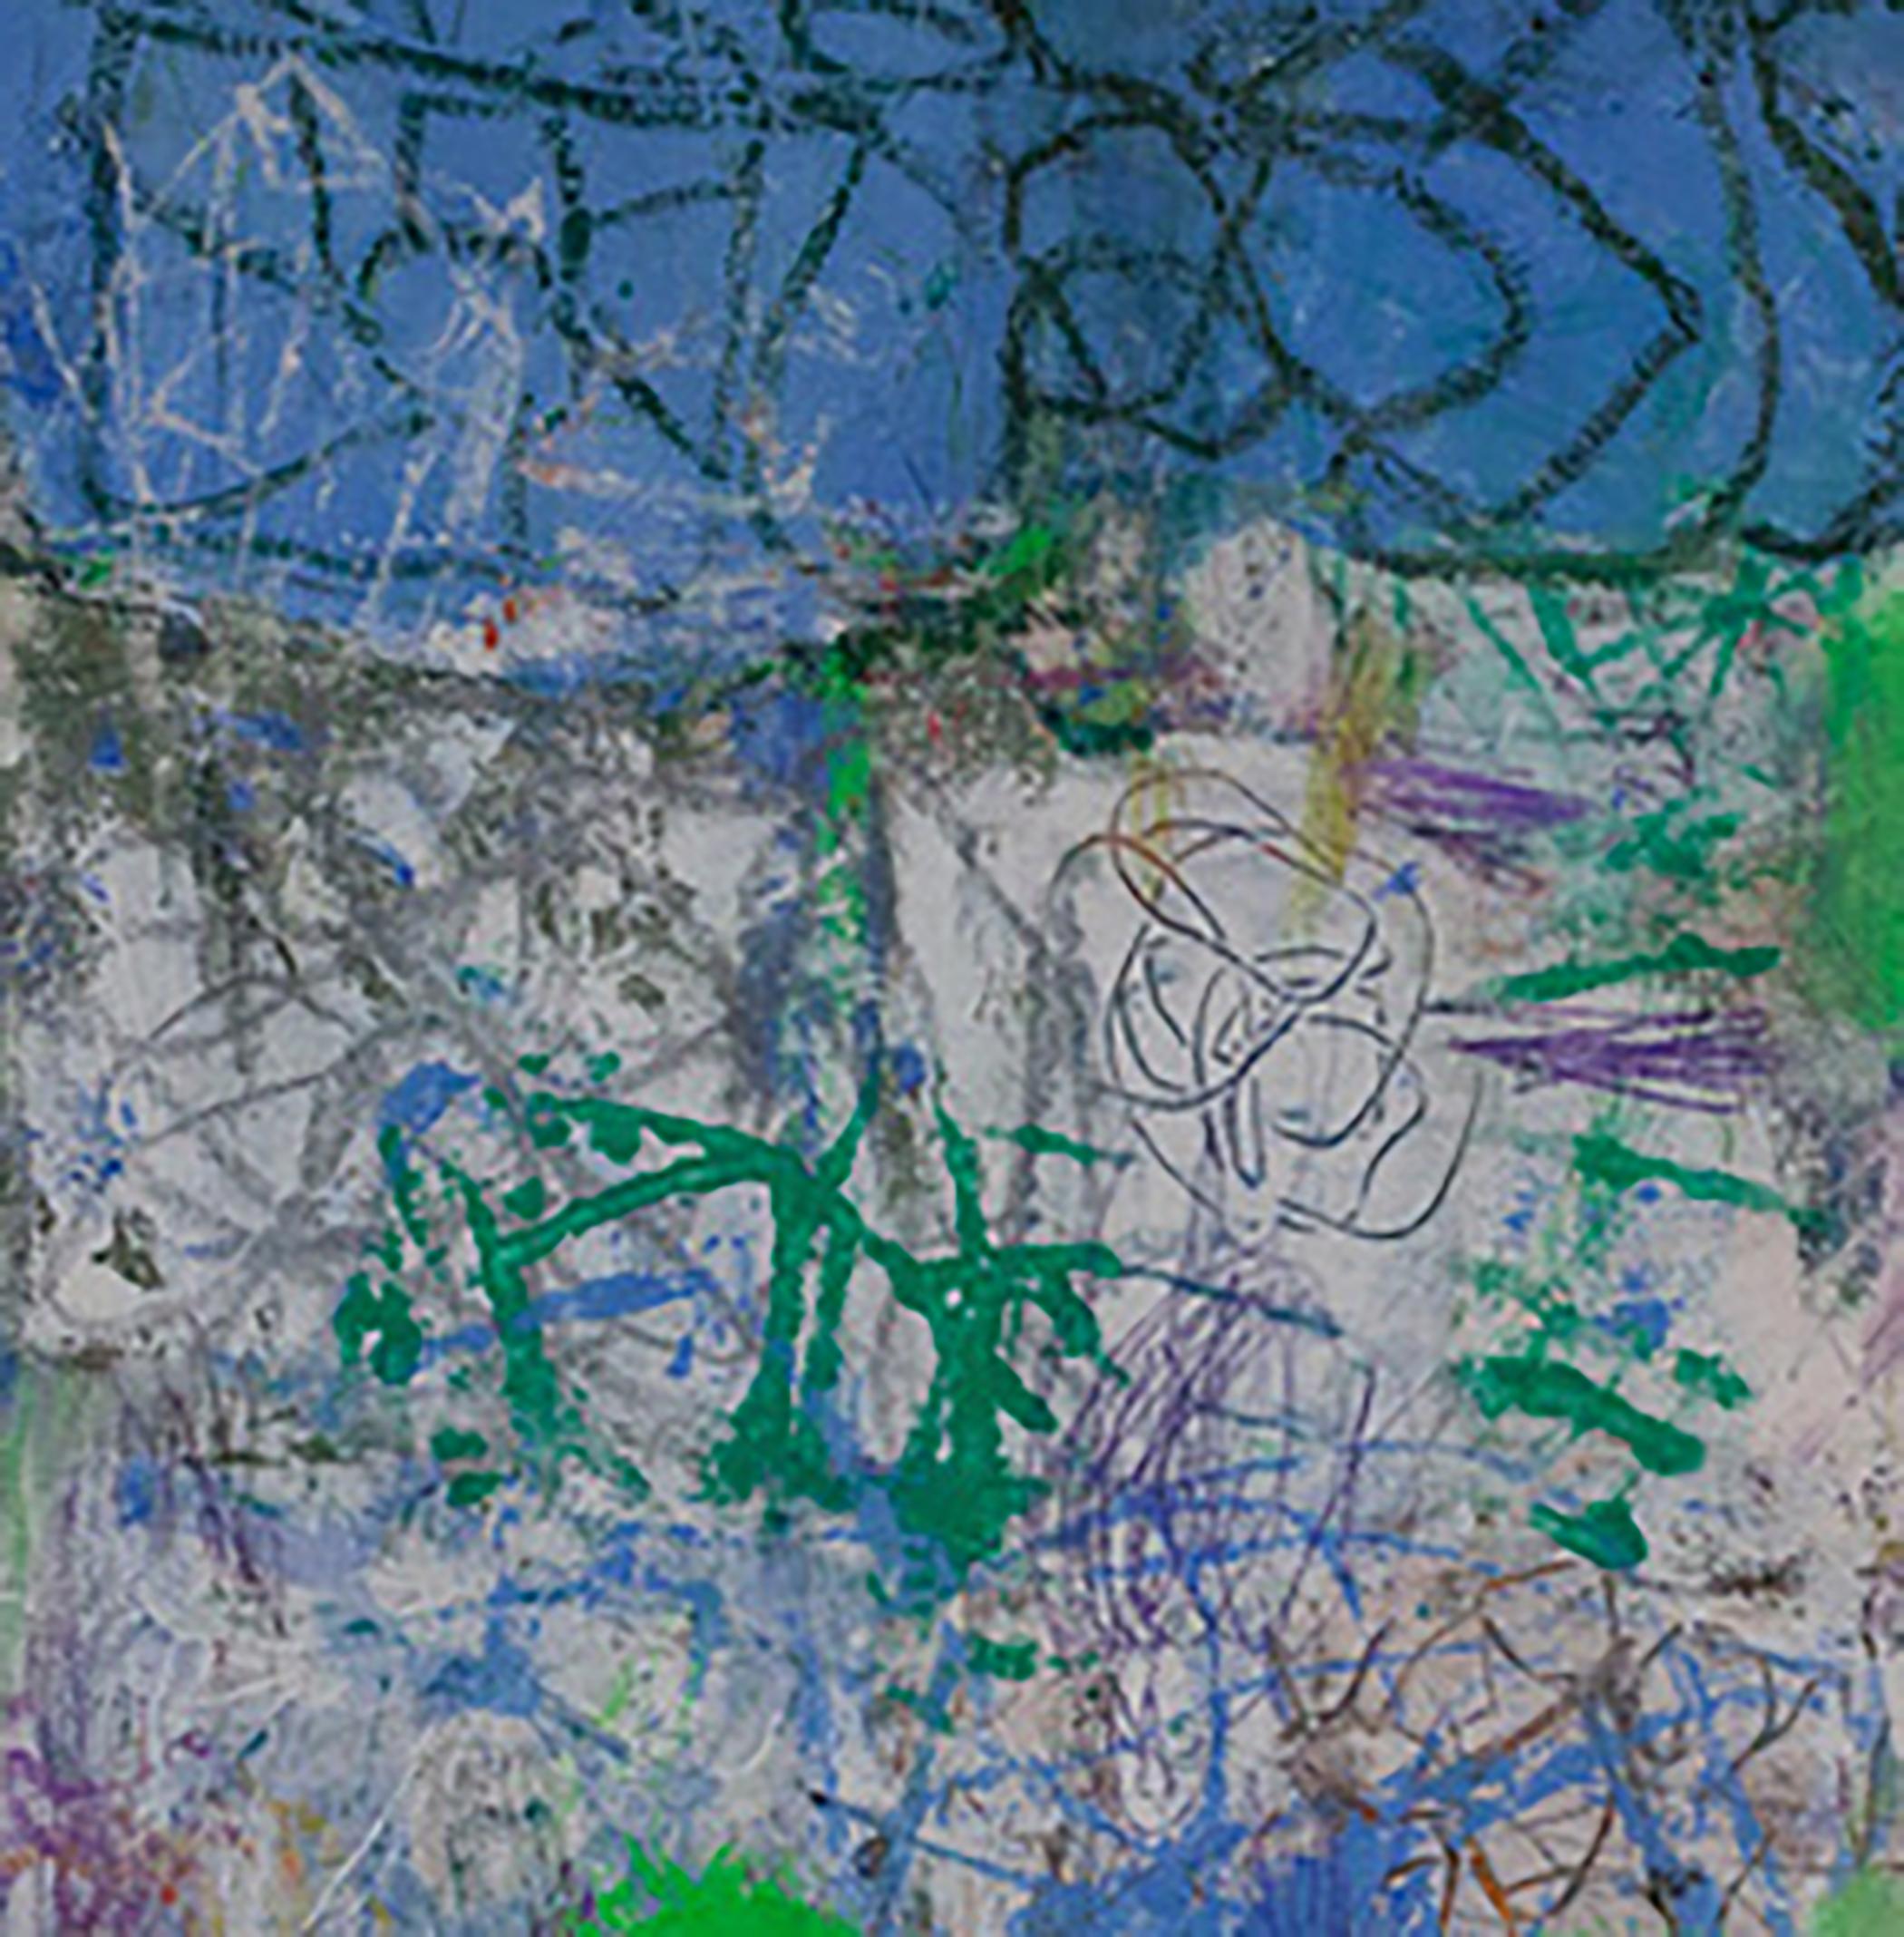 Secret Language, Blau, Grün, Weiß, Abstrakt, gestische Abstraktion, Graffiti – Painting von Margaret Fitzgerald